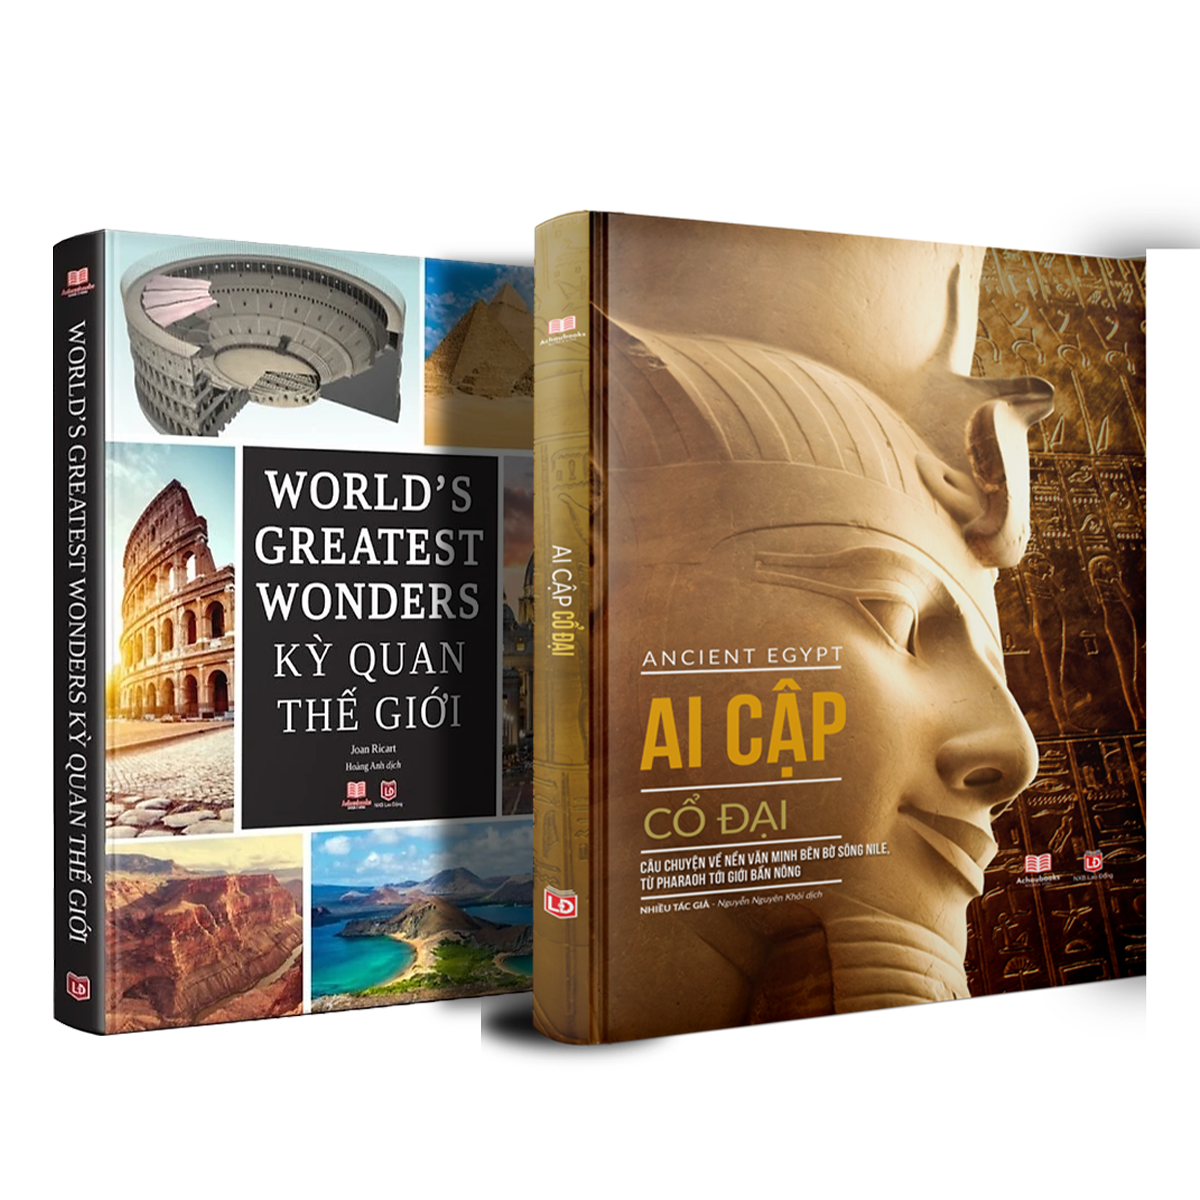 Combo sách Kỳ quan thế giới và Sách Ai cập cổ đại ( bộ 2 cuốn ) - Tổng hợp kiến thức bách khoa về địa lý lịch sử - Á Châu Books, bìa cứng in màu